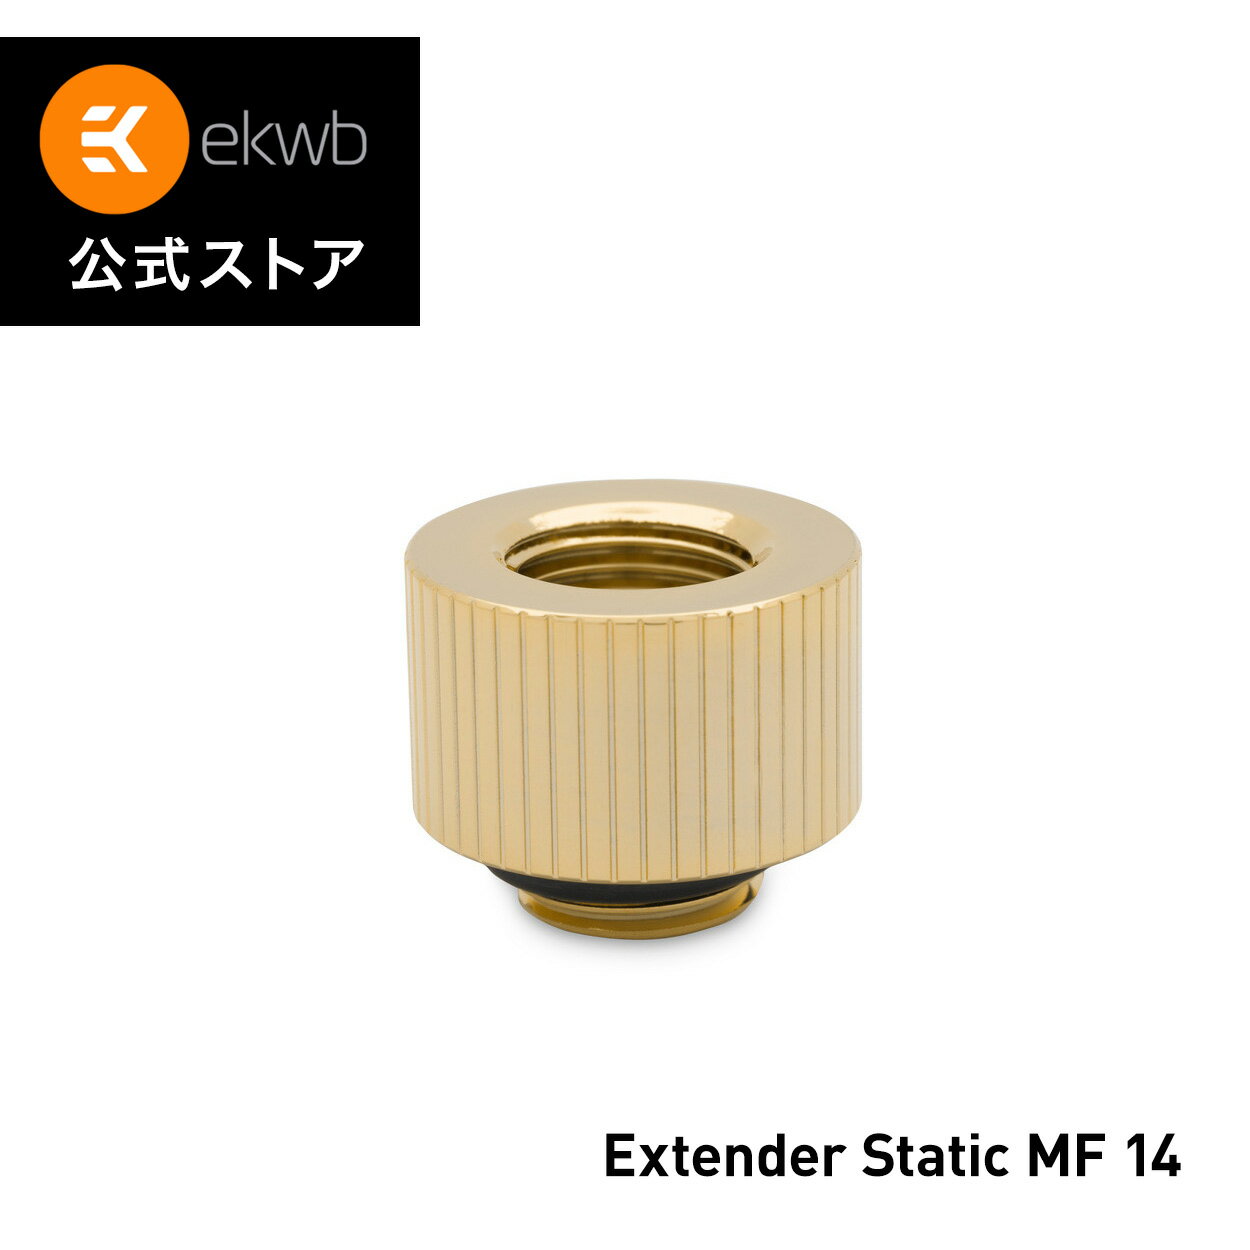 【EKWB公式】 EK-Quantum Torque Extender Static MF 14 - Gold